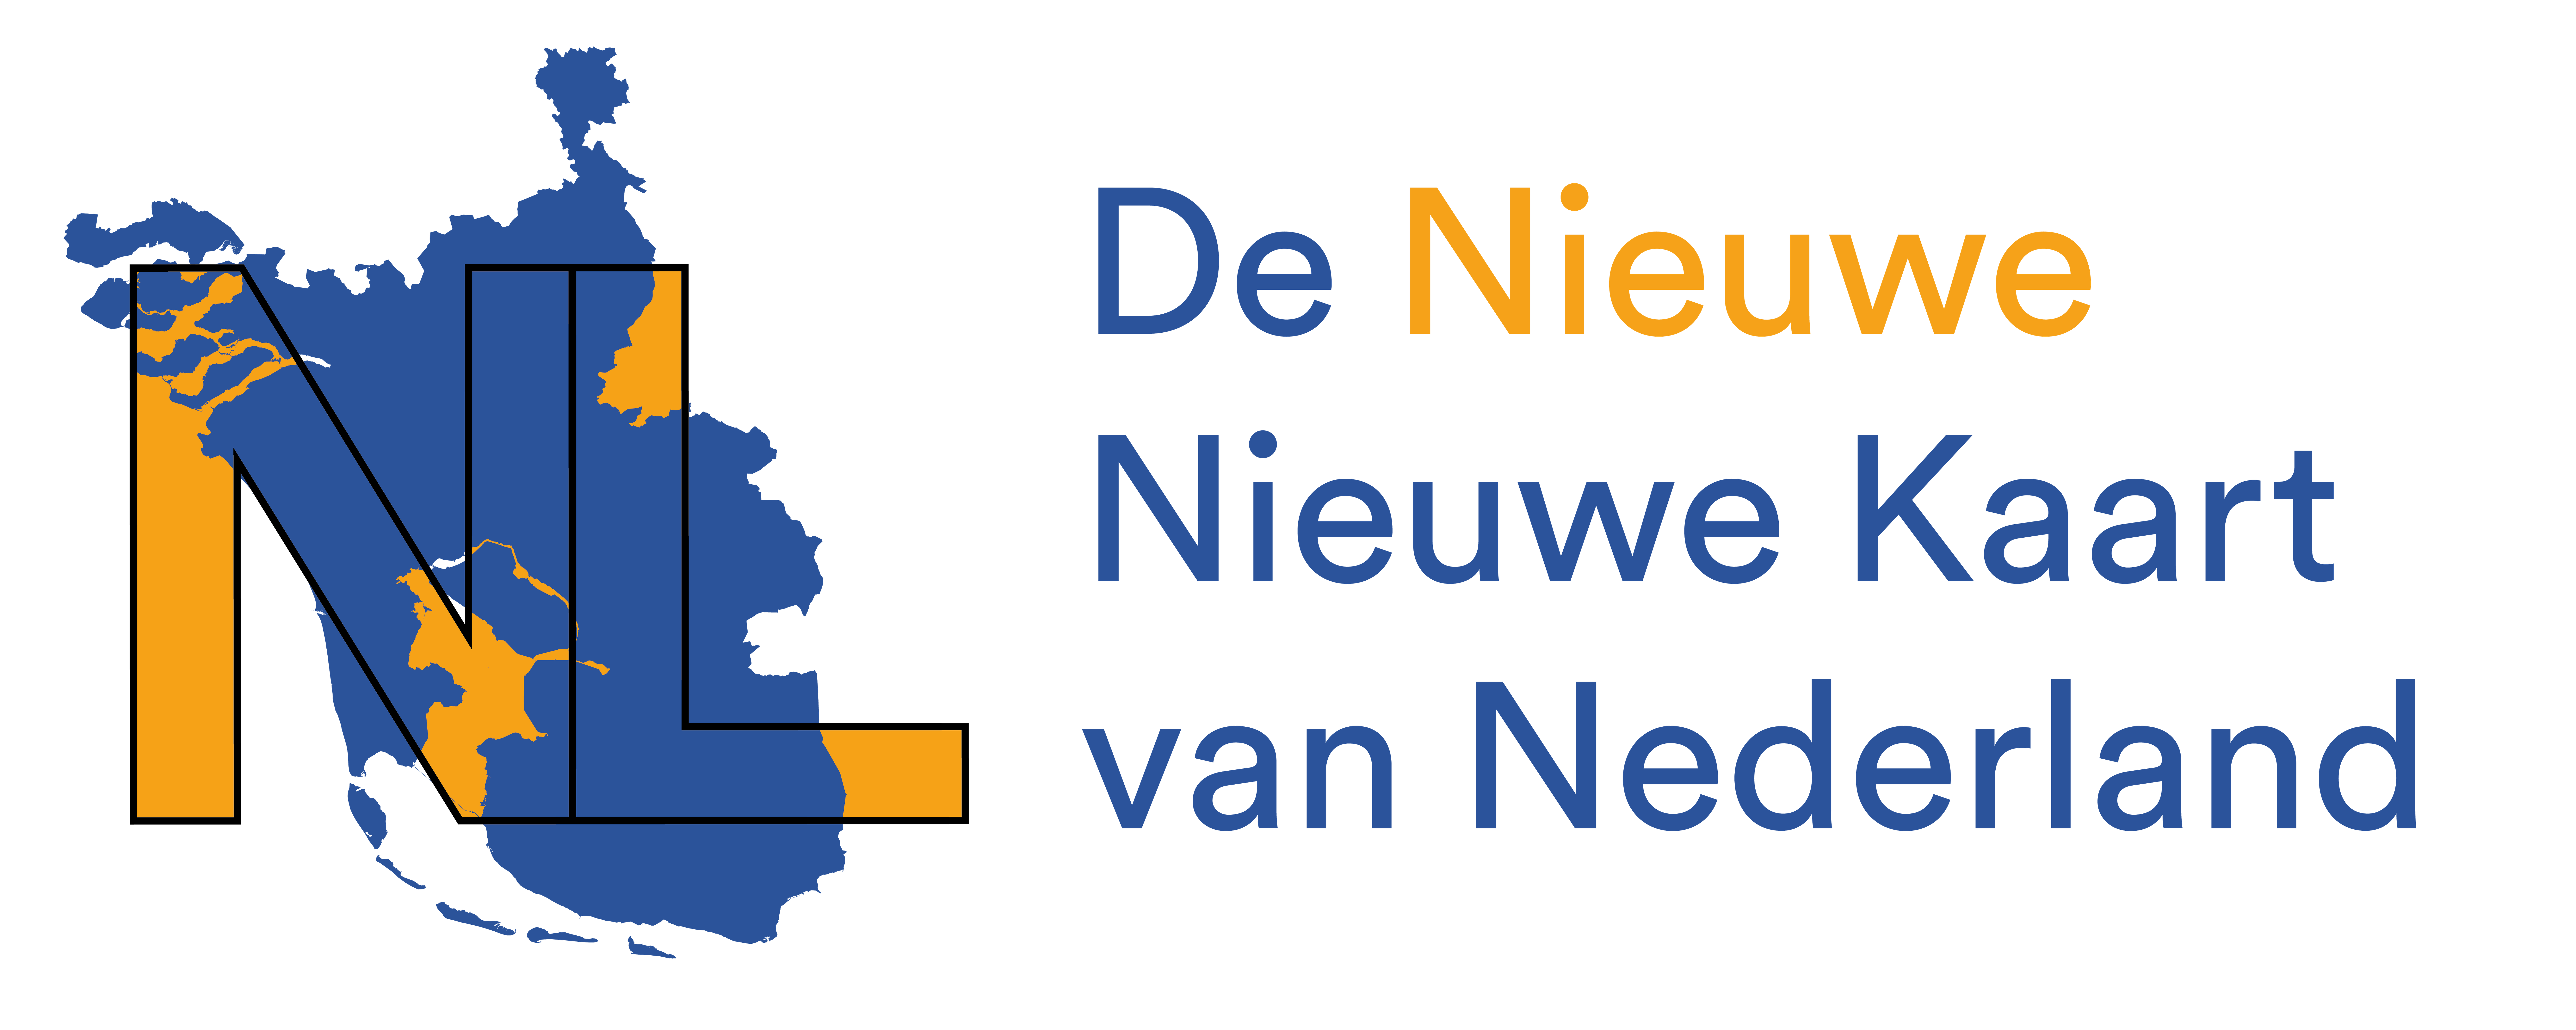 De Nieuwe Kaart van Nederland